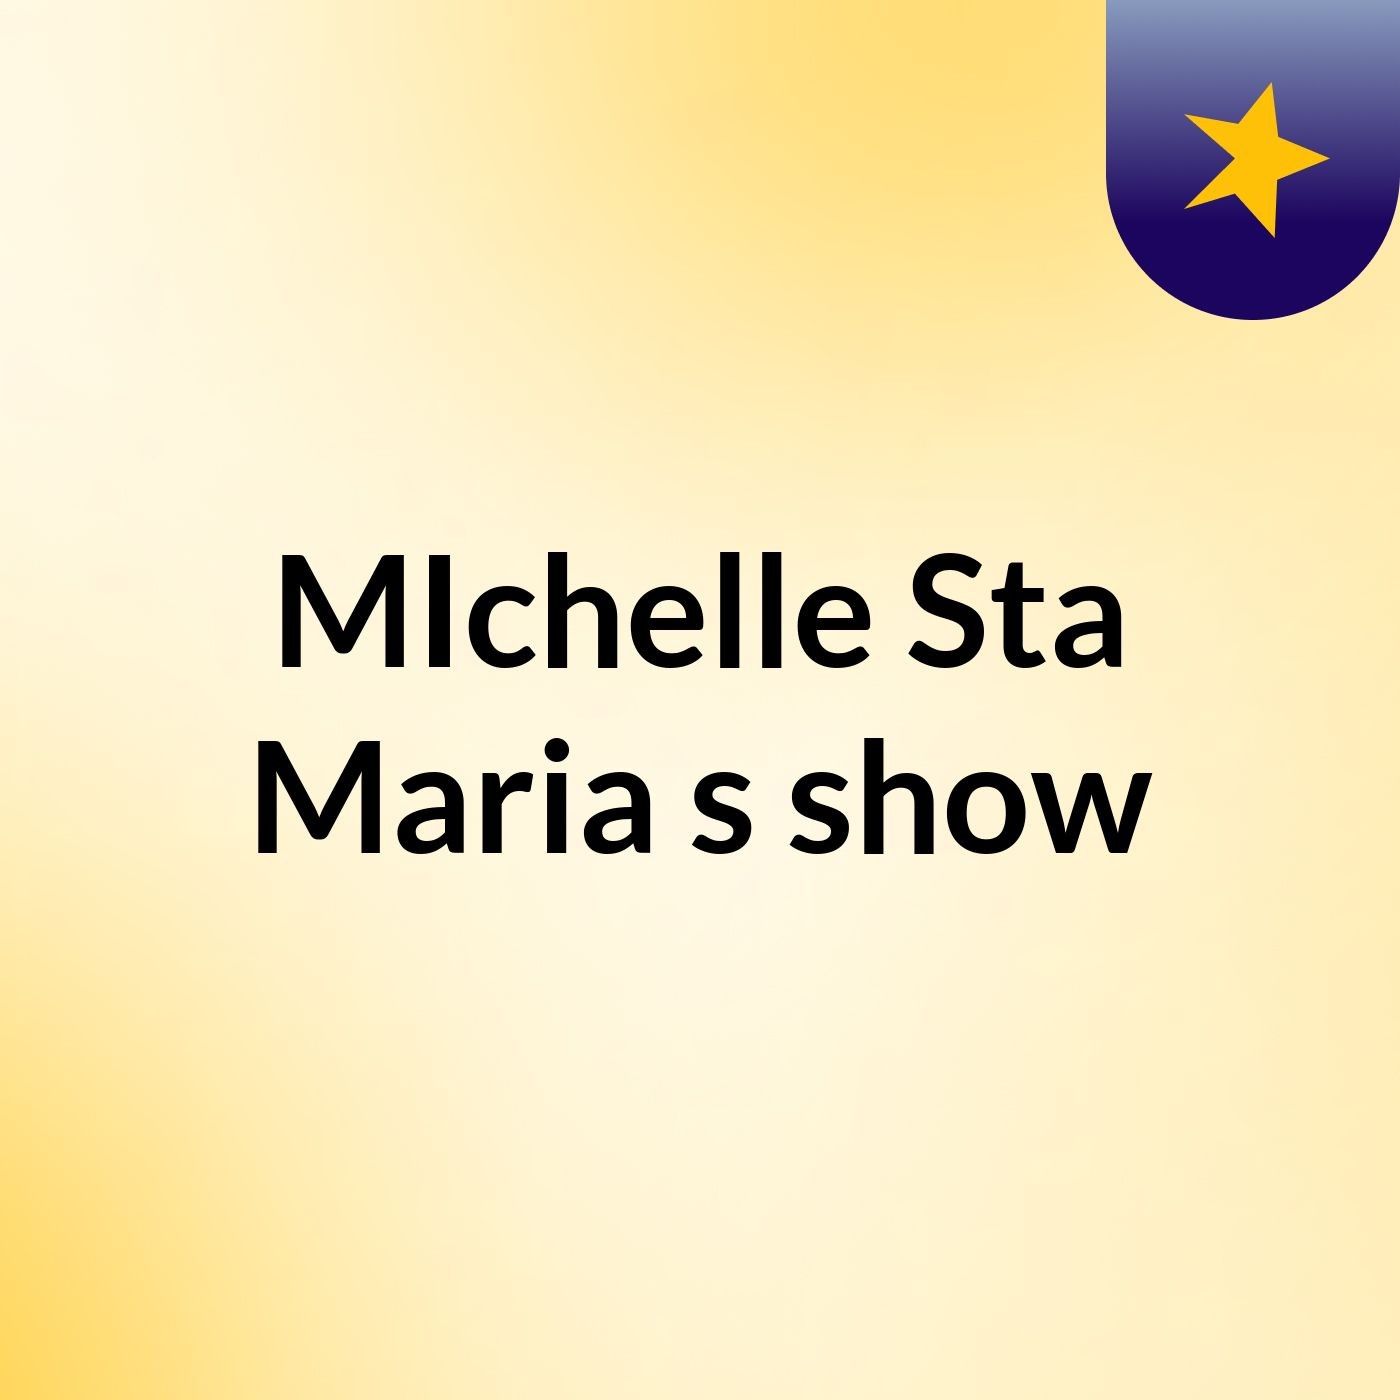 MIchelle Sta Maria's show